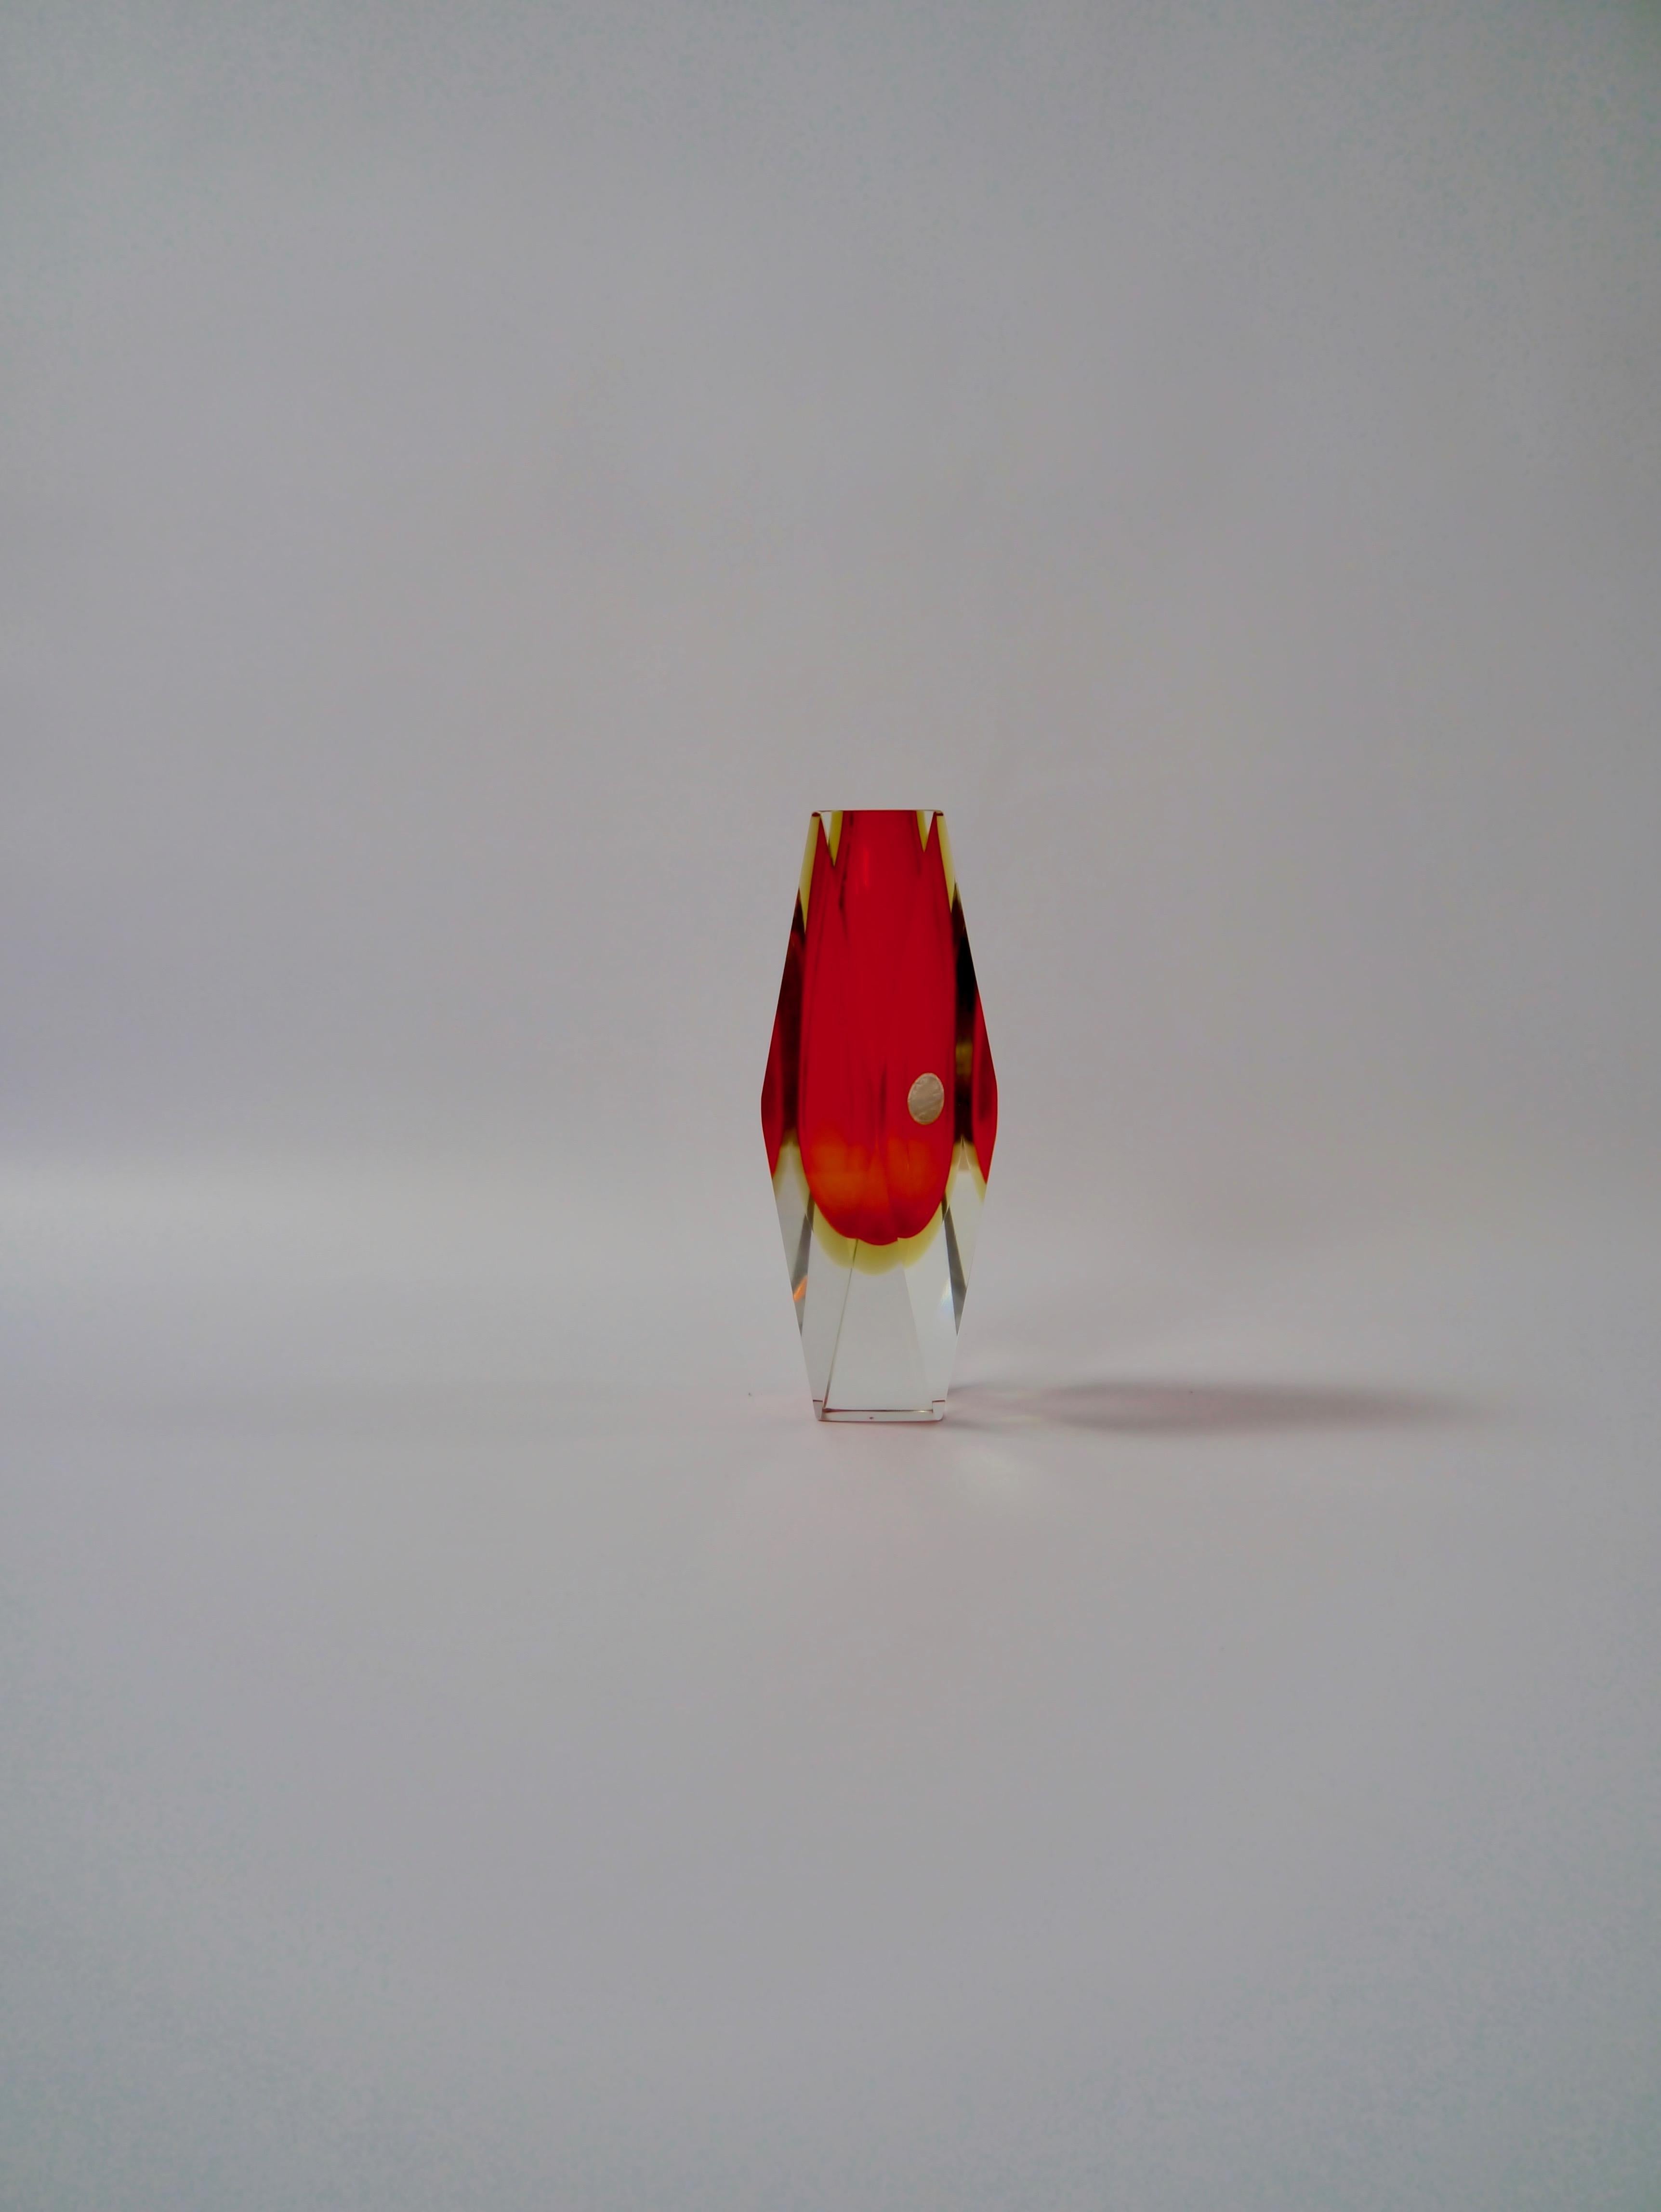 Vase en verre rouge rubis conçu par Alessandro Mandruzzato pour Vetreria Artistica Oball, Italie, années 1970. Une forme tranchante et furtive, réalisée avec la technique Sommerso en utilisant différentes couches de verre, dans ce cas le rouge rubis